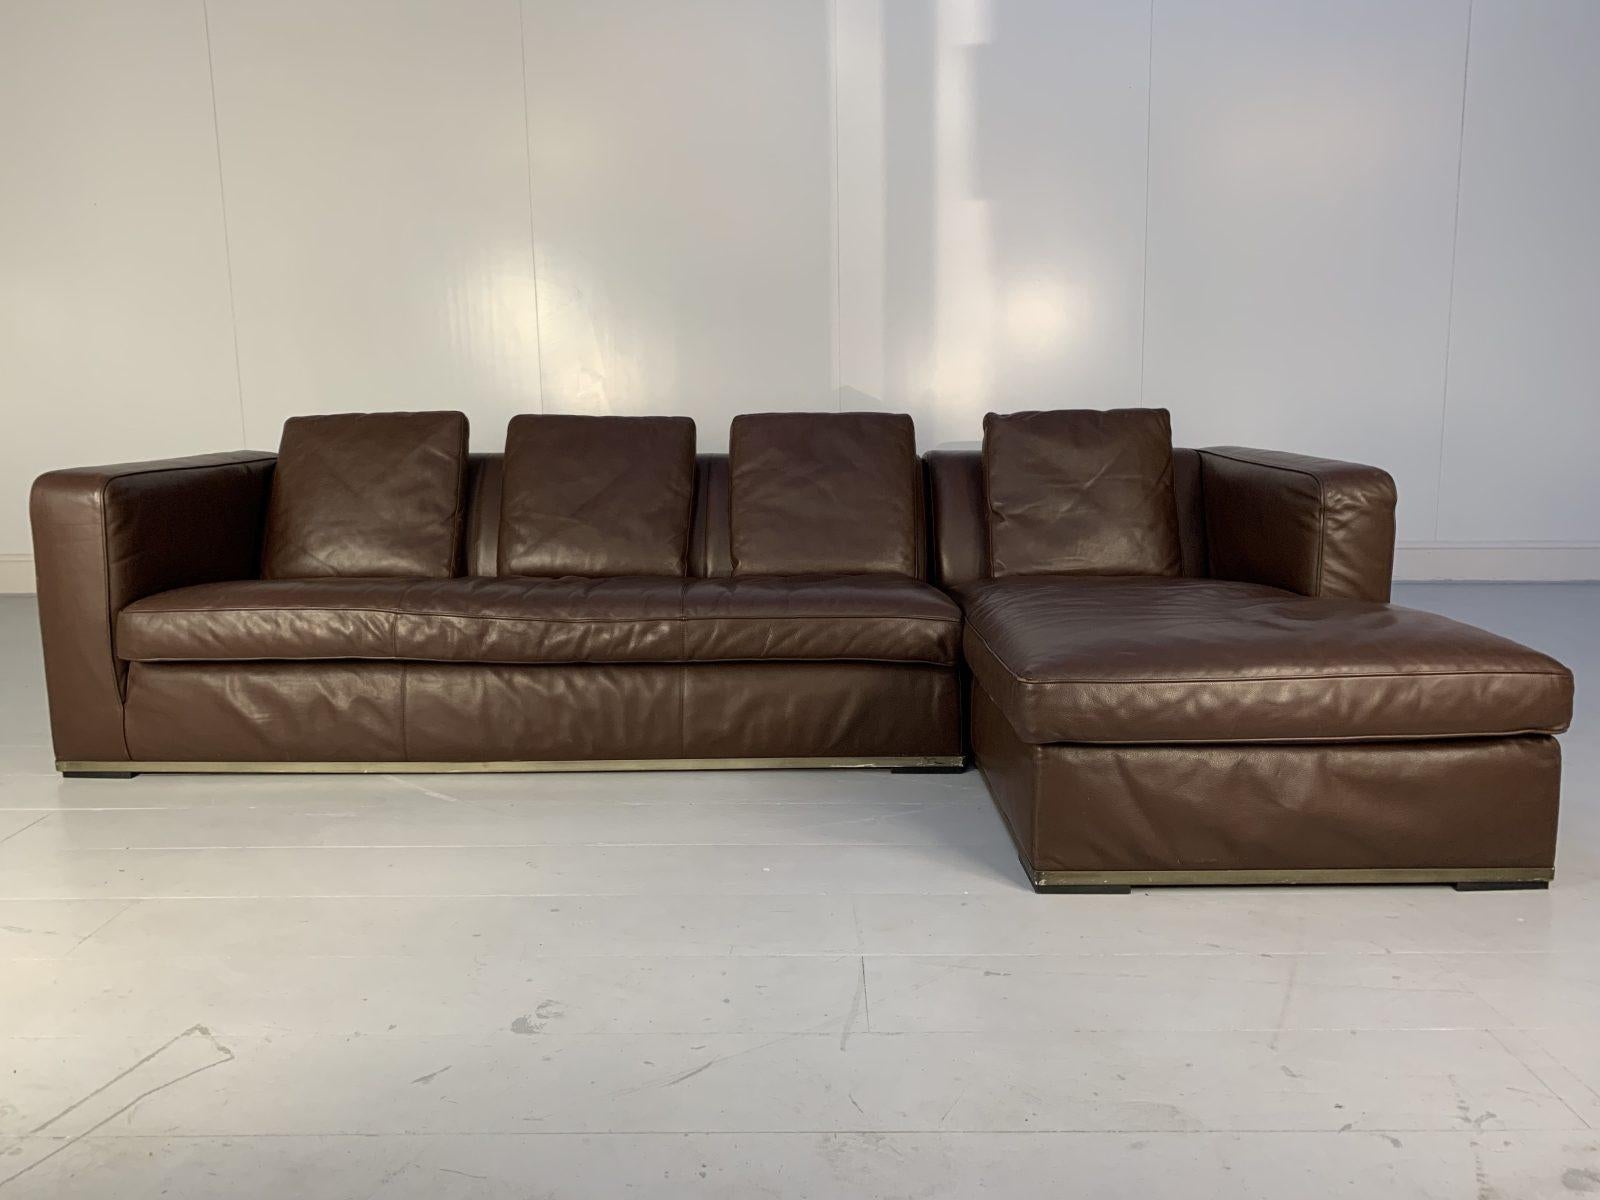 B&B Italia “Maxalto Apta” L-Shape Sofa – in Brown “Gamma” Leather In Good Condition For Sale In Barrowford, GB